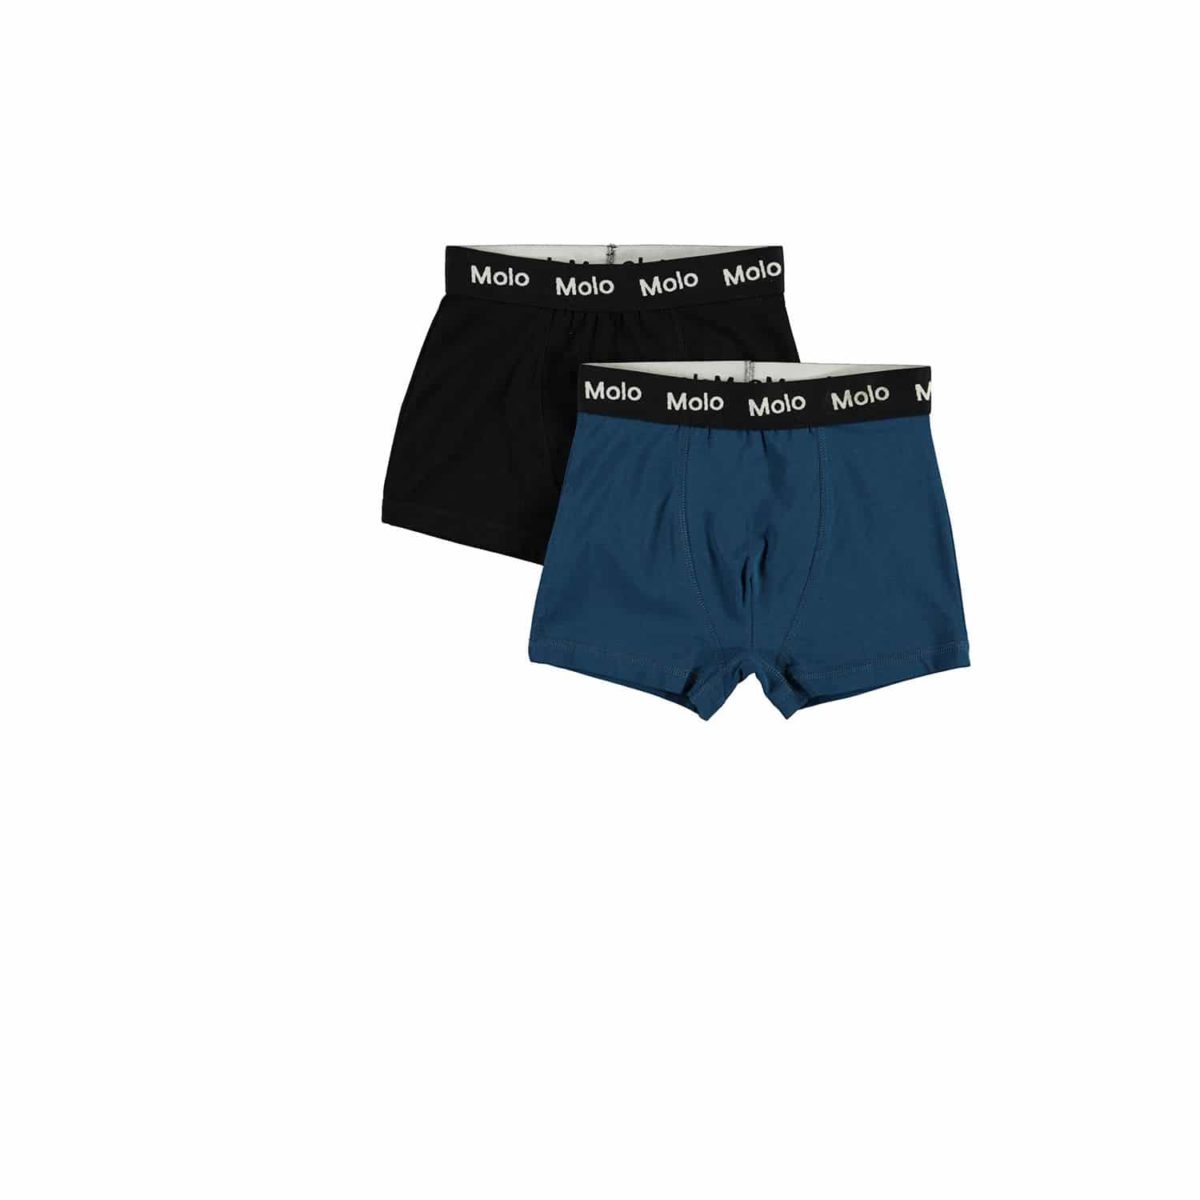 Molo - Boxershorts Justin, 2 pak, sort og blå